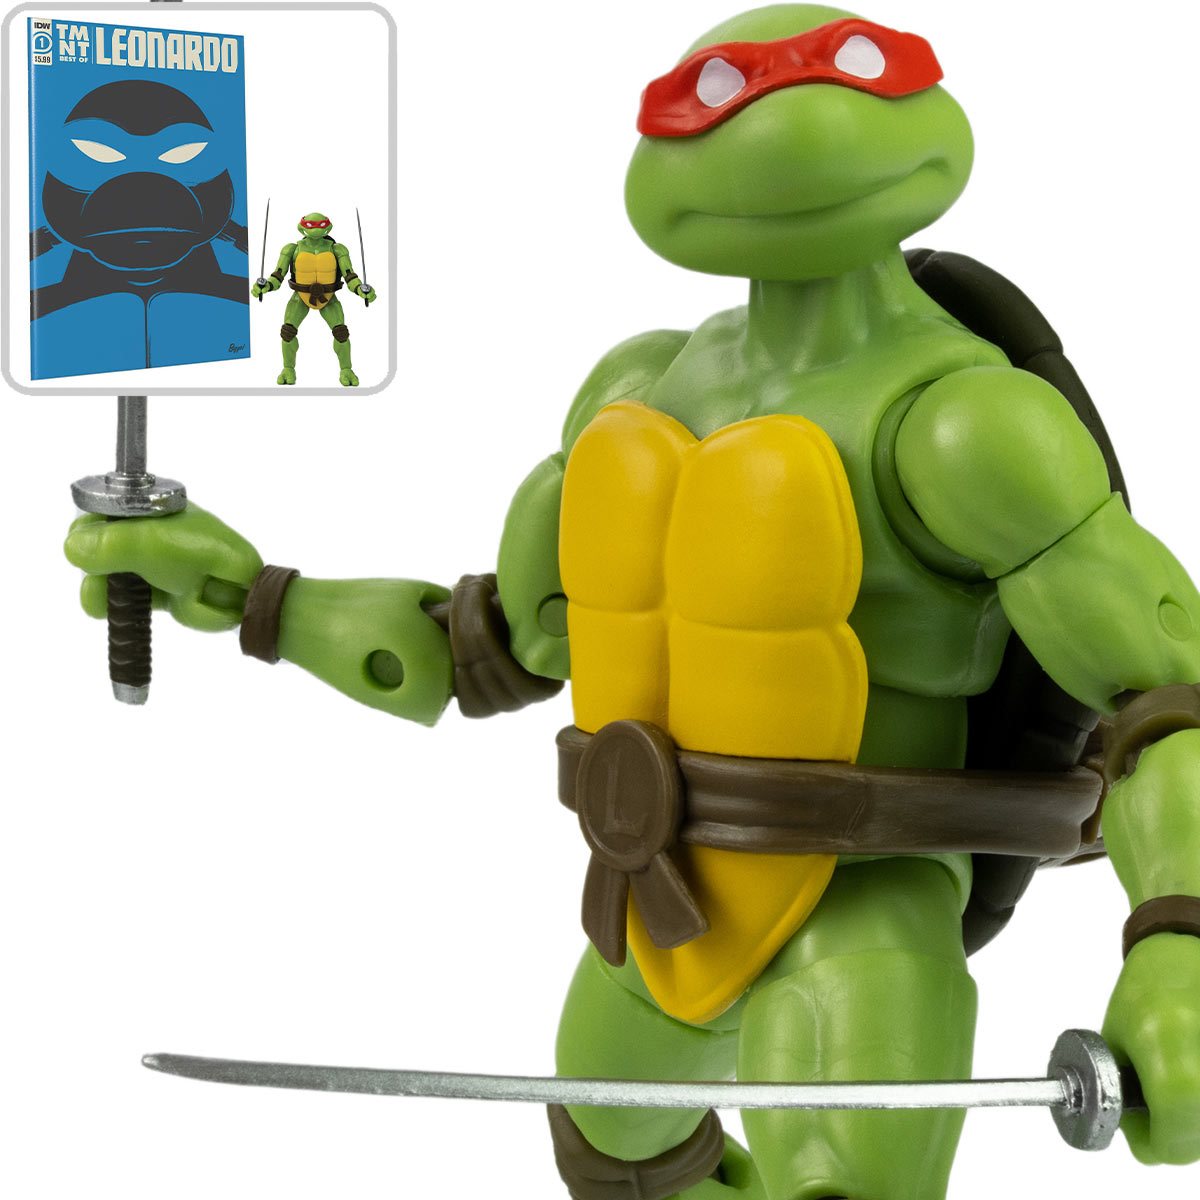 Teenage Mutant Ninja Turtles Action Figure - Comic Book Leonardo